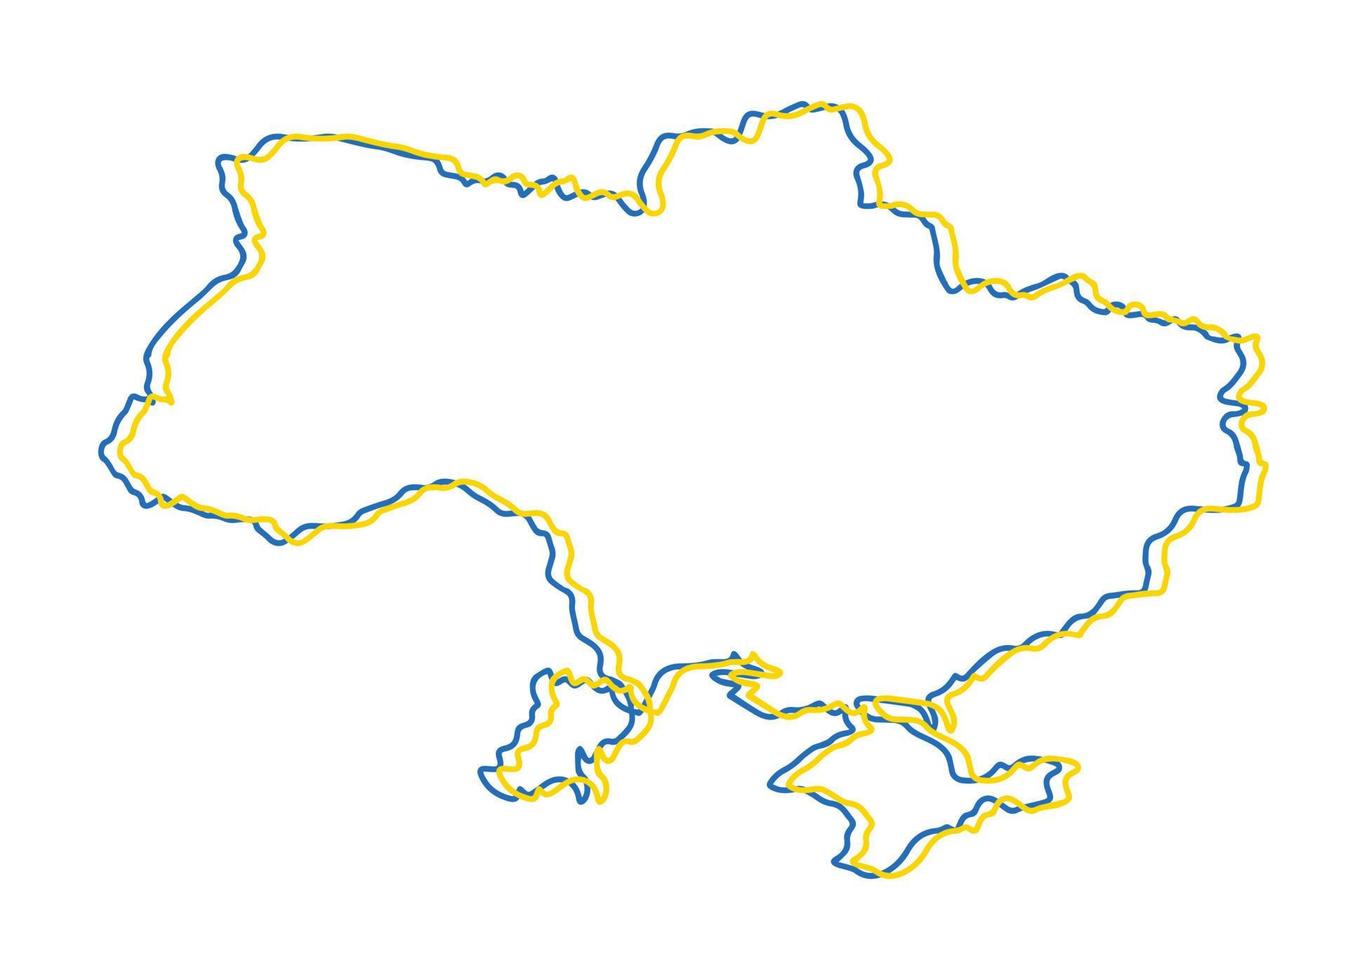 mapa da ucrânia - mapa de contorno de contorno de contorno de linha azul e amarelo simples desenhado à mão. ilustração vetorial isolada no branco. desenho de silhueta de fronteira ucraniana vetor